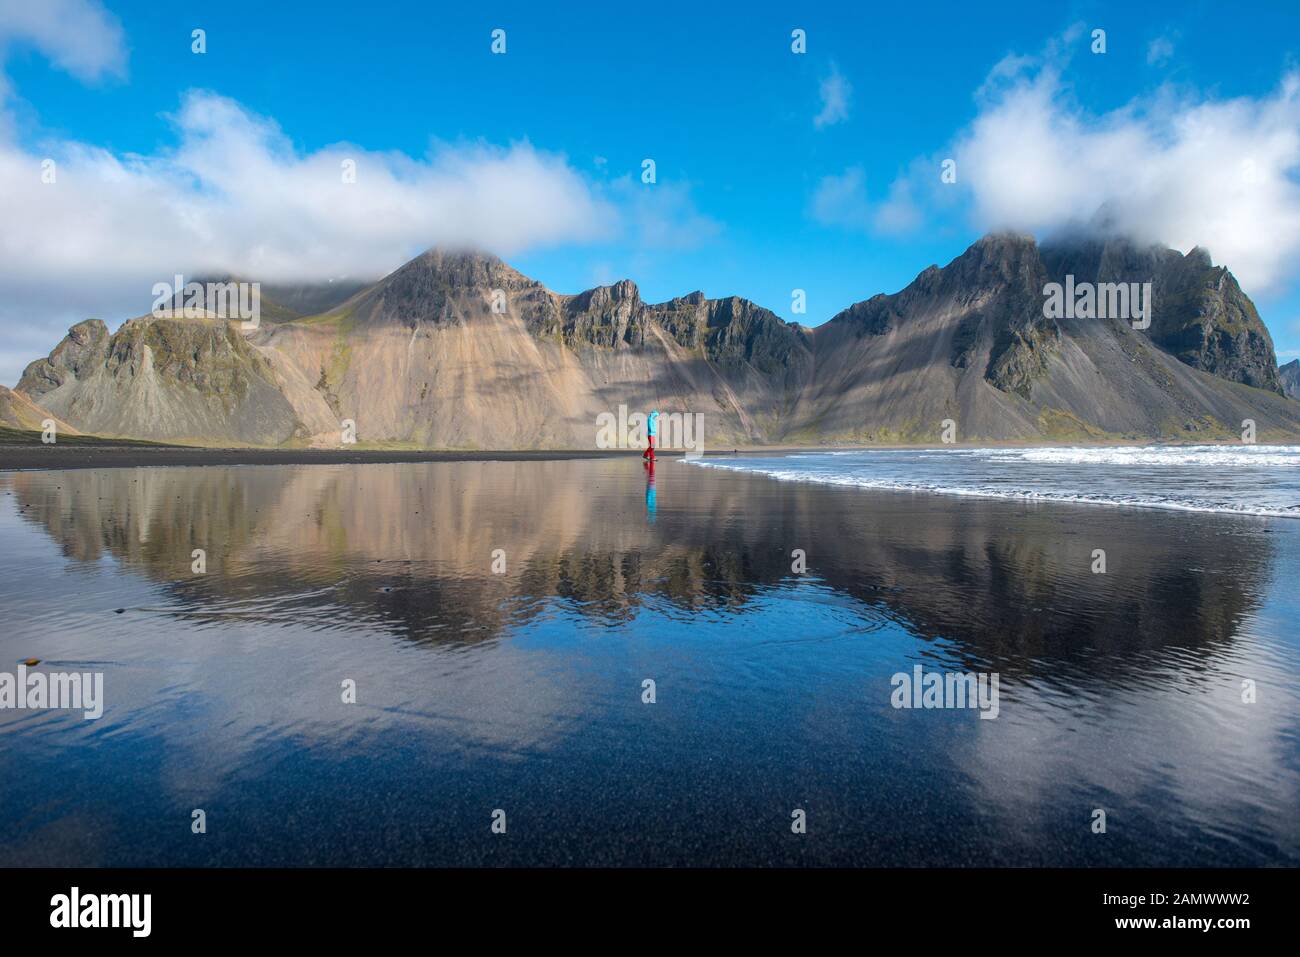 Paysage islandais étonnant, reflet de la montagne de Vestrahorn dans les eaux de l'océan Atlantique. Péninsule De Stokksnes, Hofn, Islande Banque D'Images